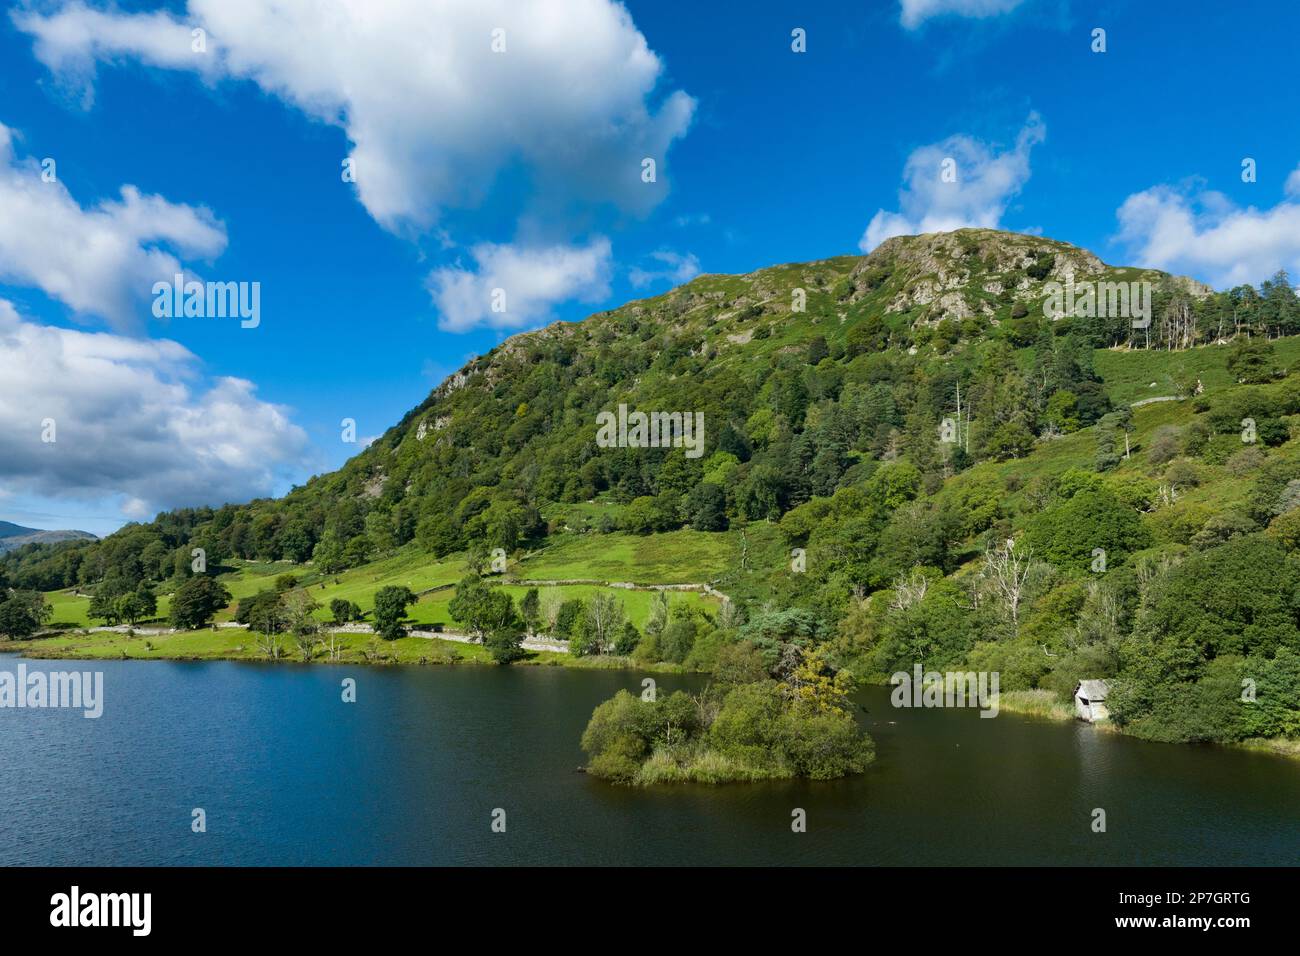 Angleterre, Cumbria, parc national de Lake District. Vue aérienne de Rydal en direction du quartier des lacs du nord. Banque D'Images